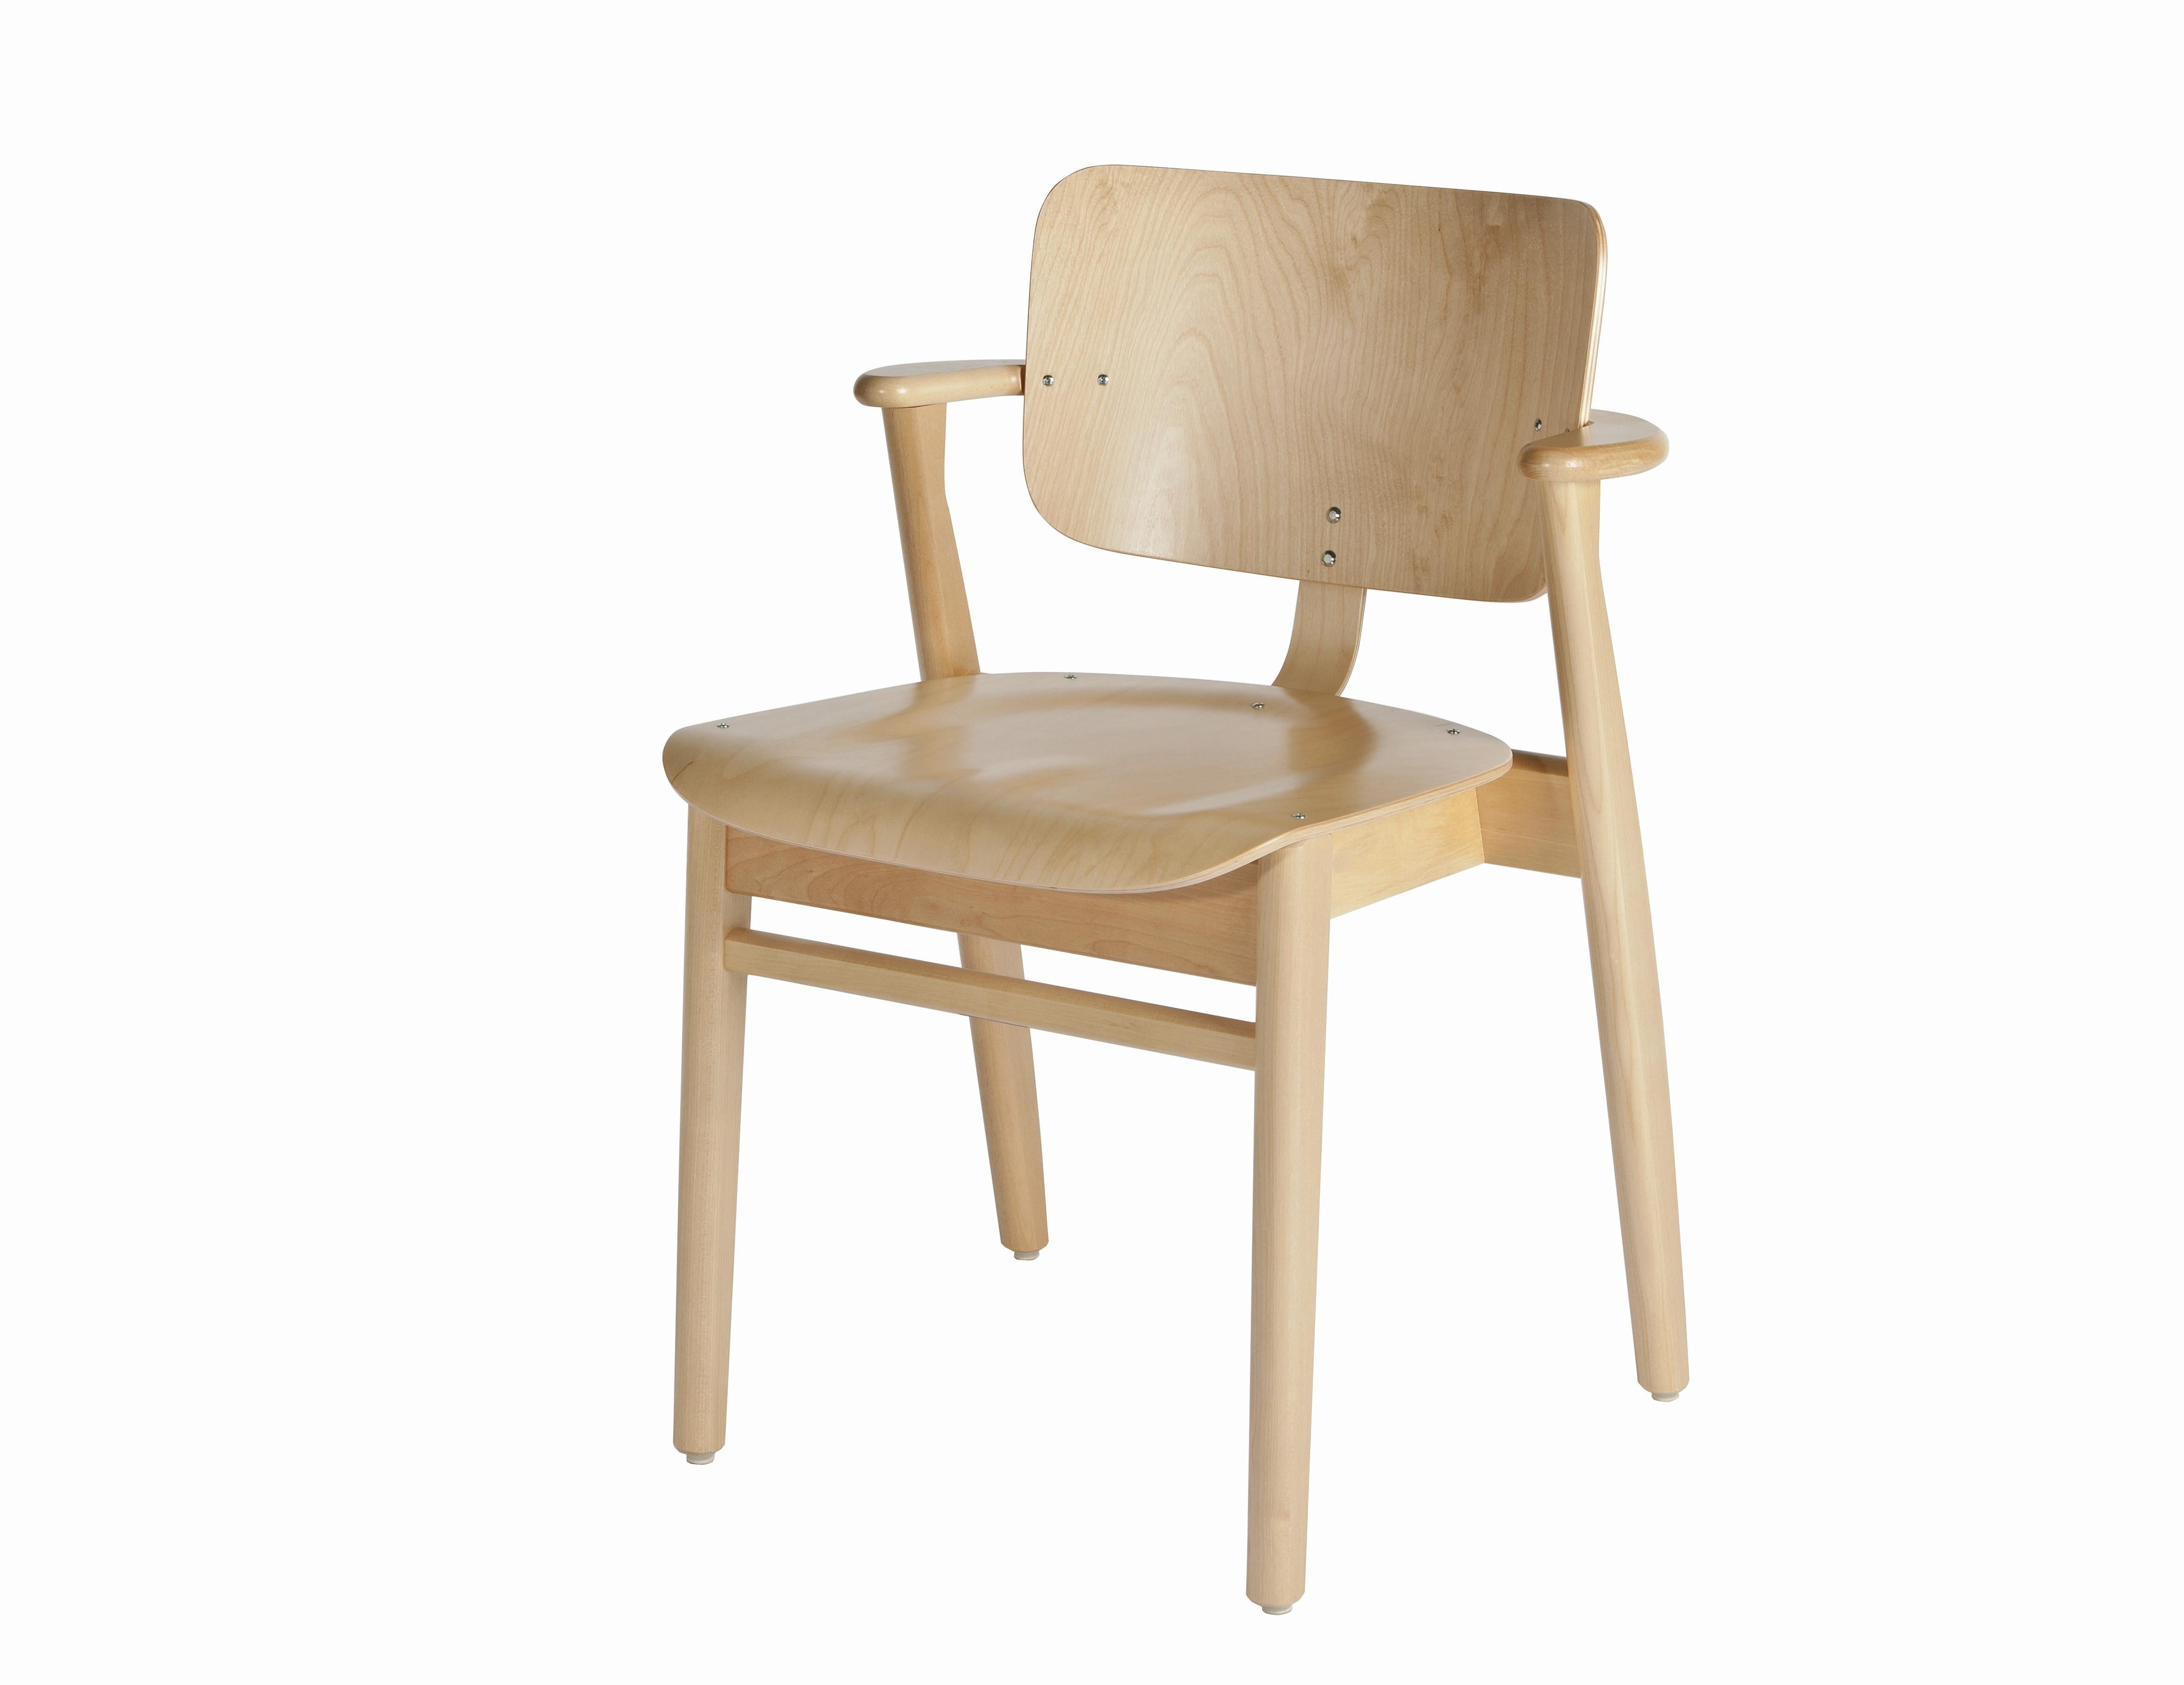 Finnish Ilmari Tapiovaara Domus Chair in Natural Oak for Artek